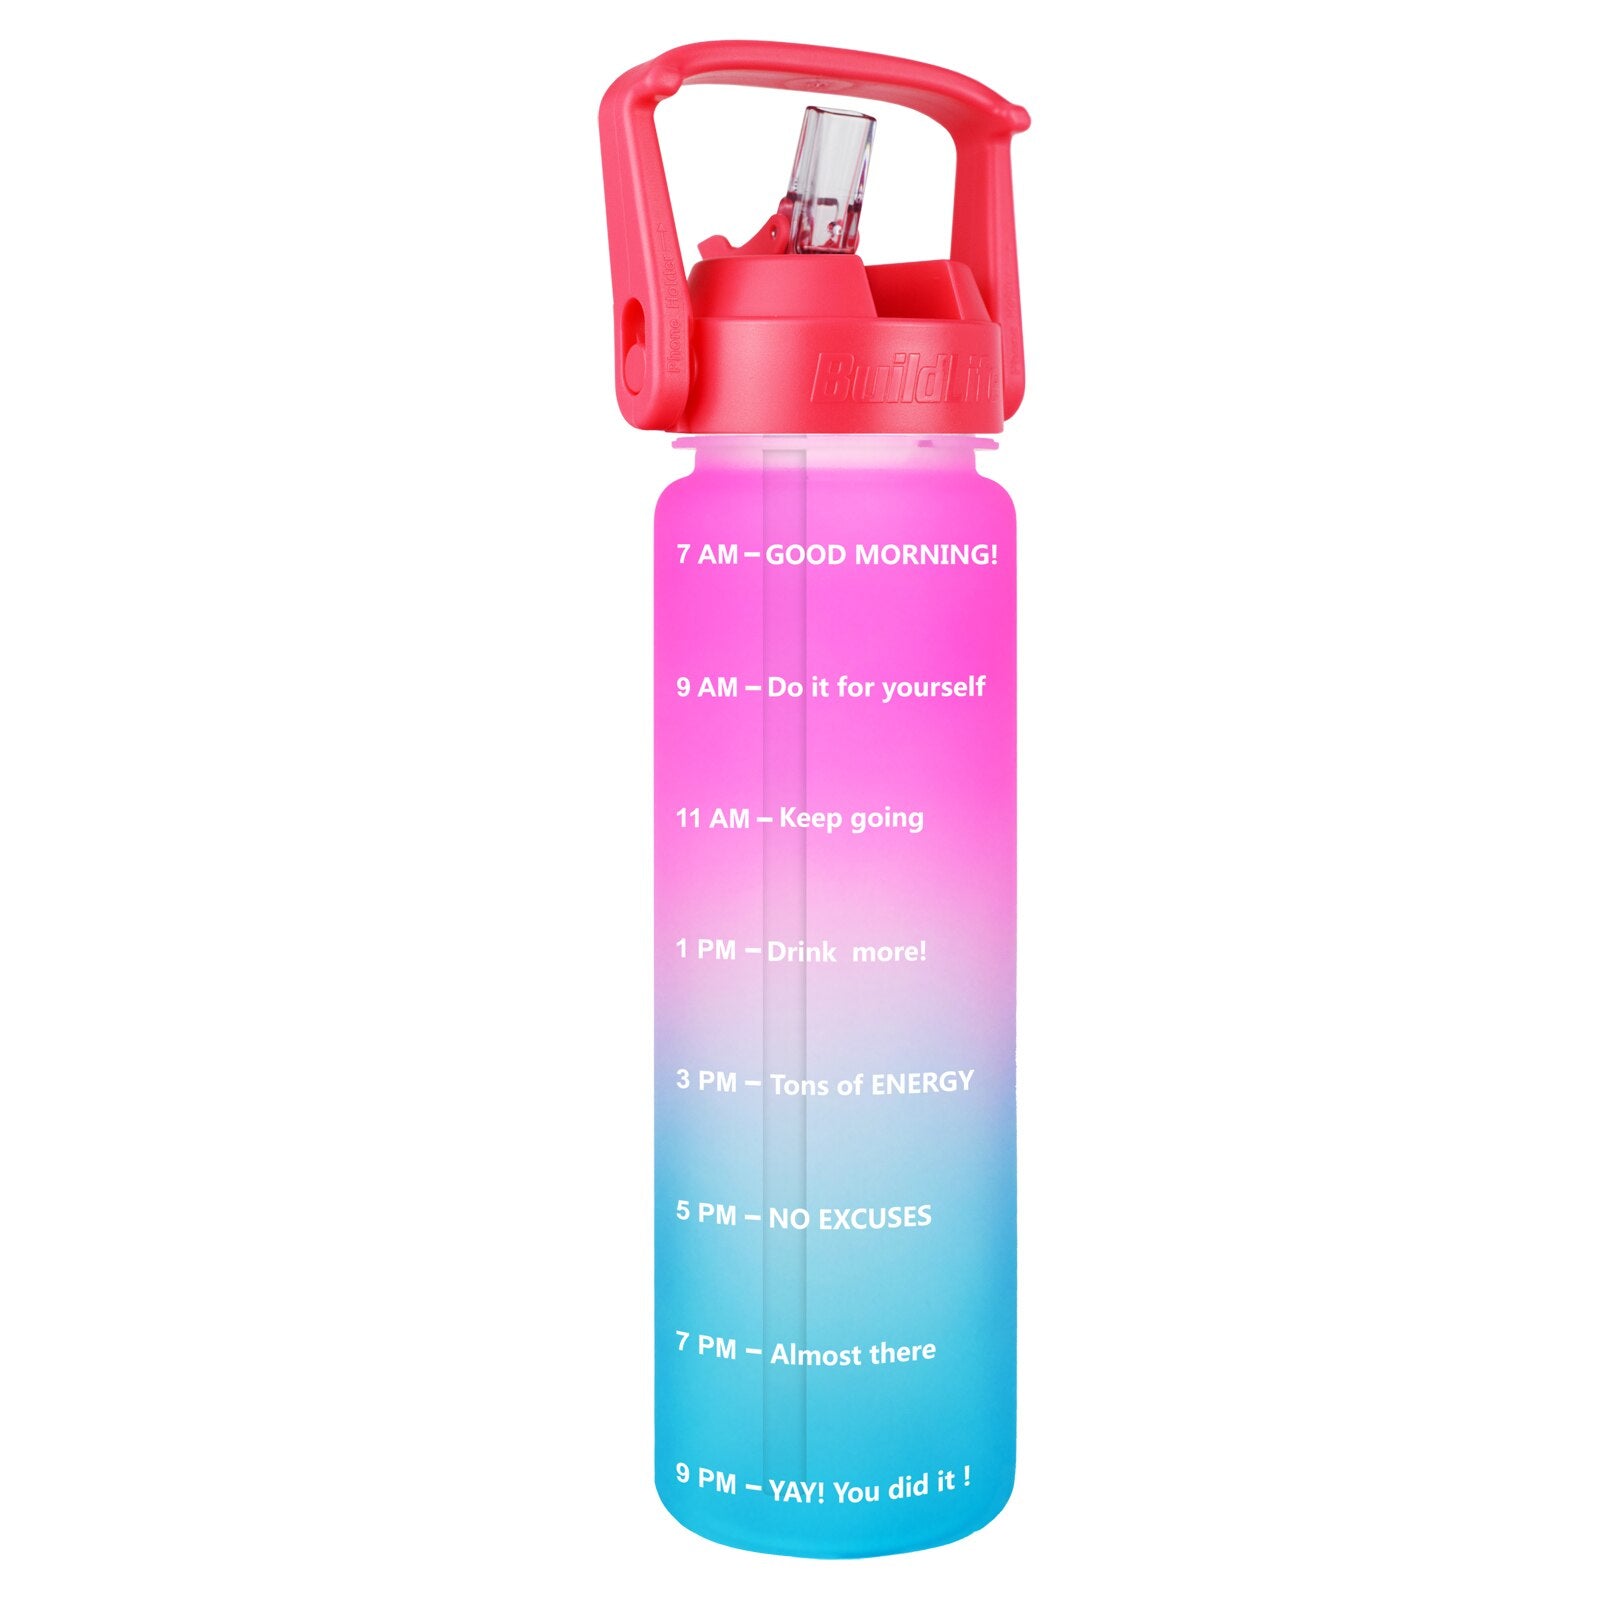 Eine Sporttrinkflasche mit einem Farbverlauf von Rot zu Tuerkis, ausgestattet mit einem grossen Henkel und mit Zeitmarkierungen zur Fluessigkeitsueberwachung. Unten ist das Markenlogo "QuiFit" zu sehen.